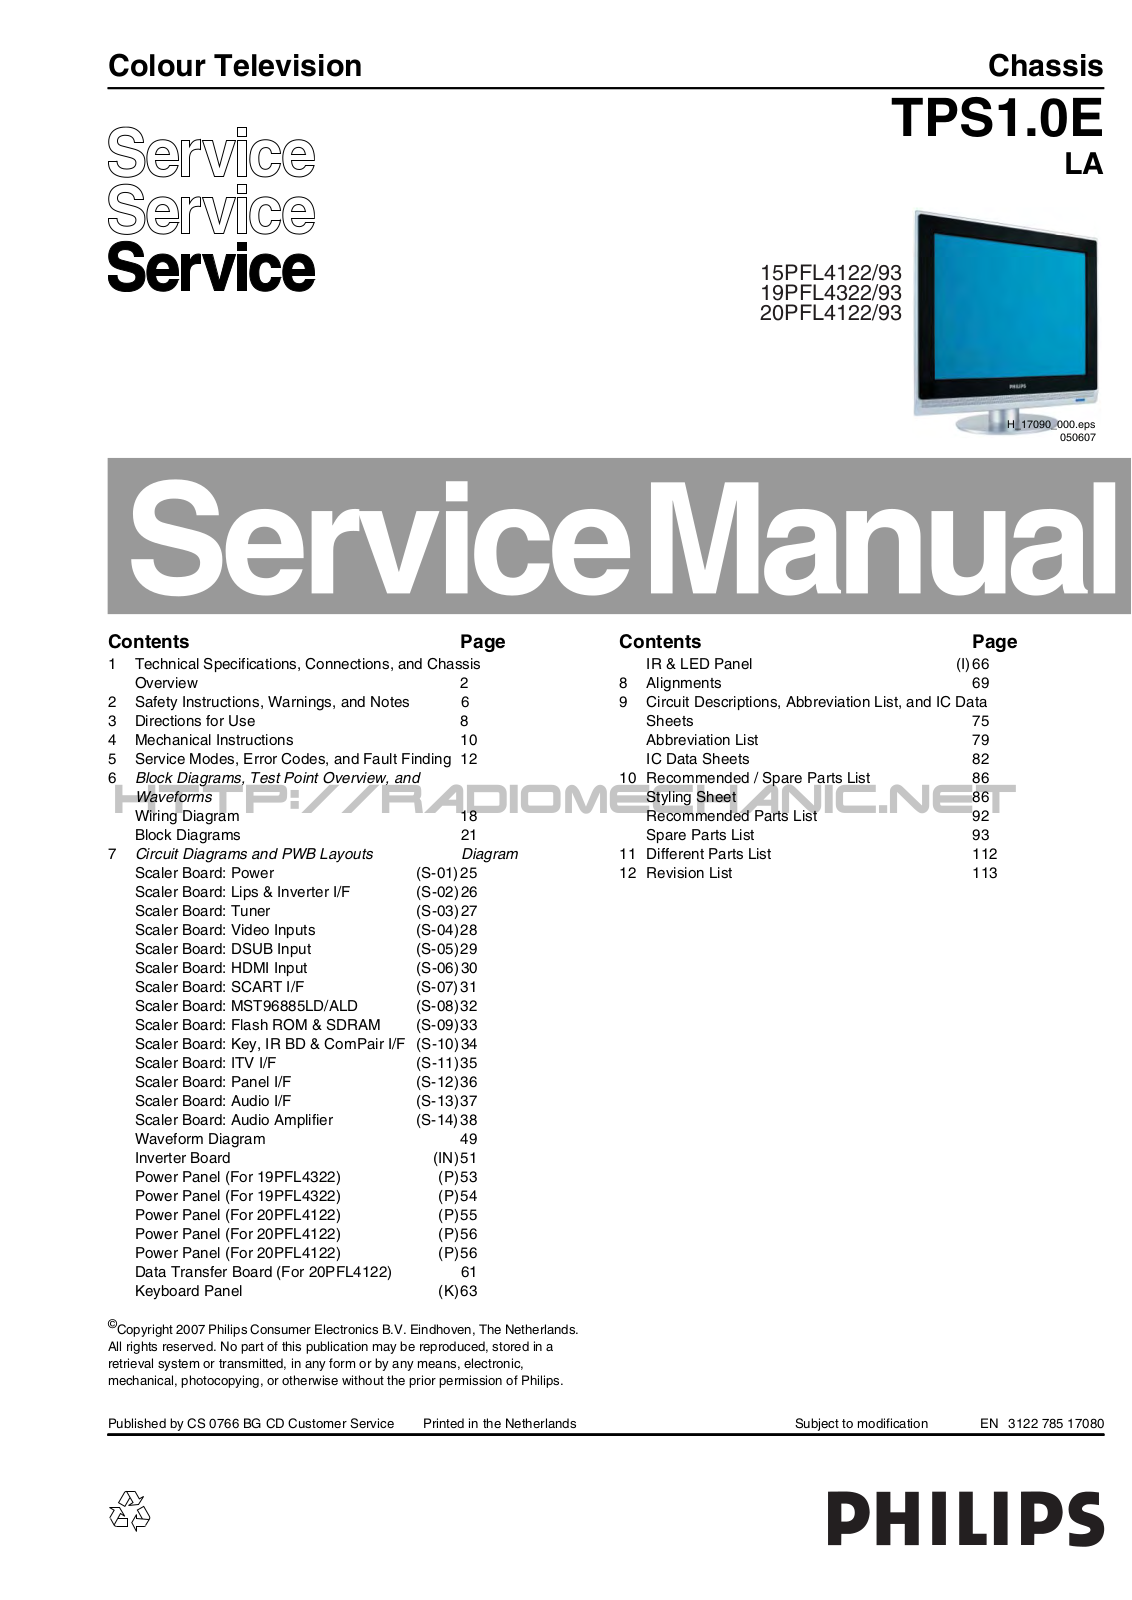 Philips 15PFL4122, 19PFL4322, 20PFL4122 Service manual